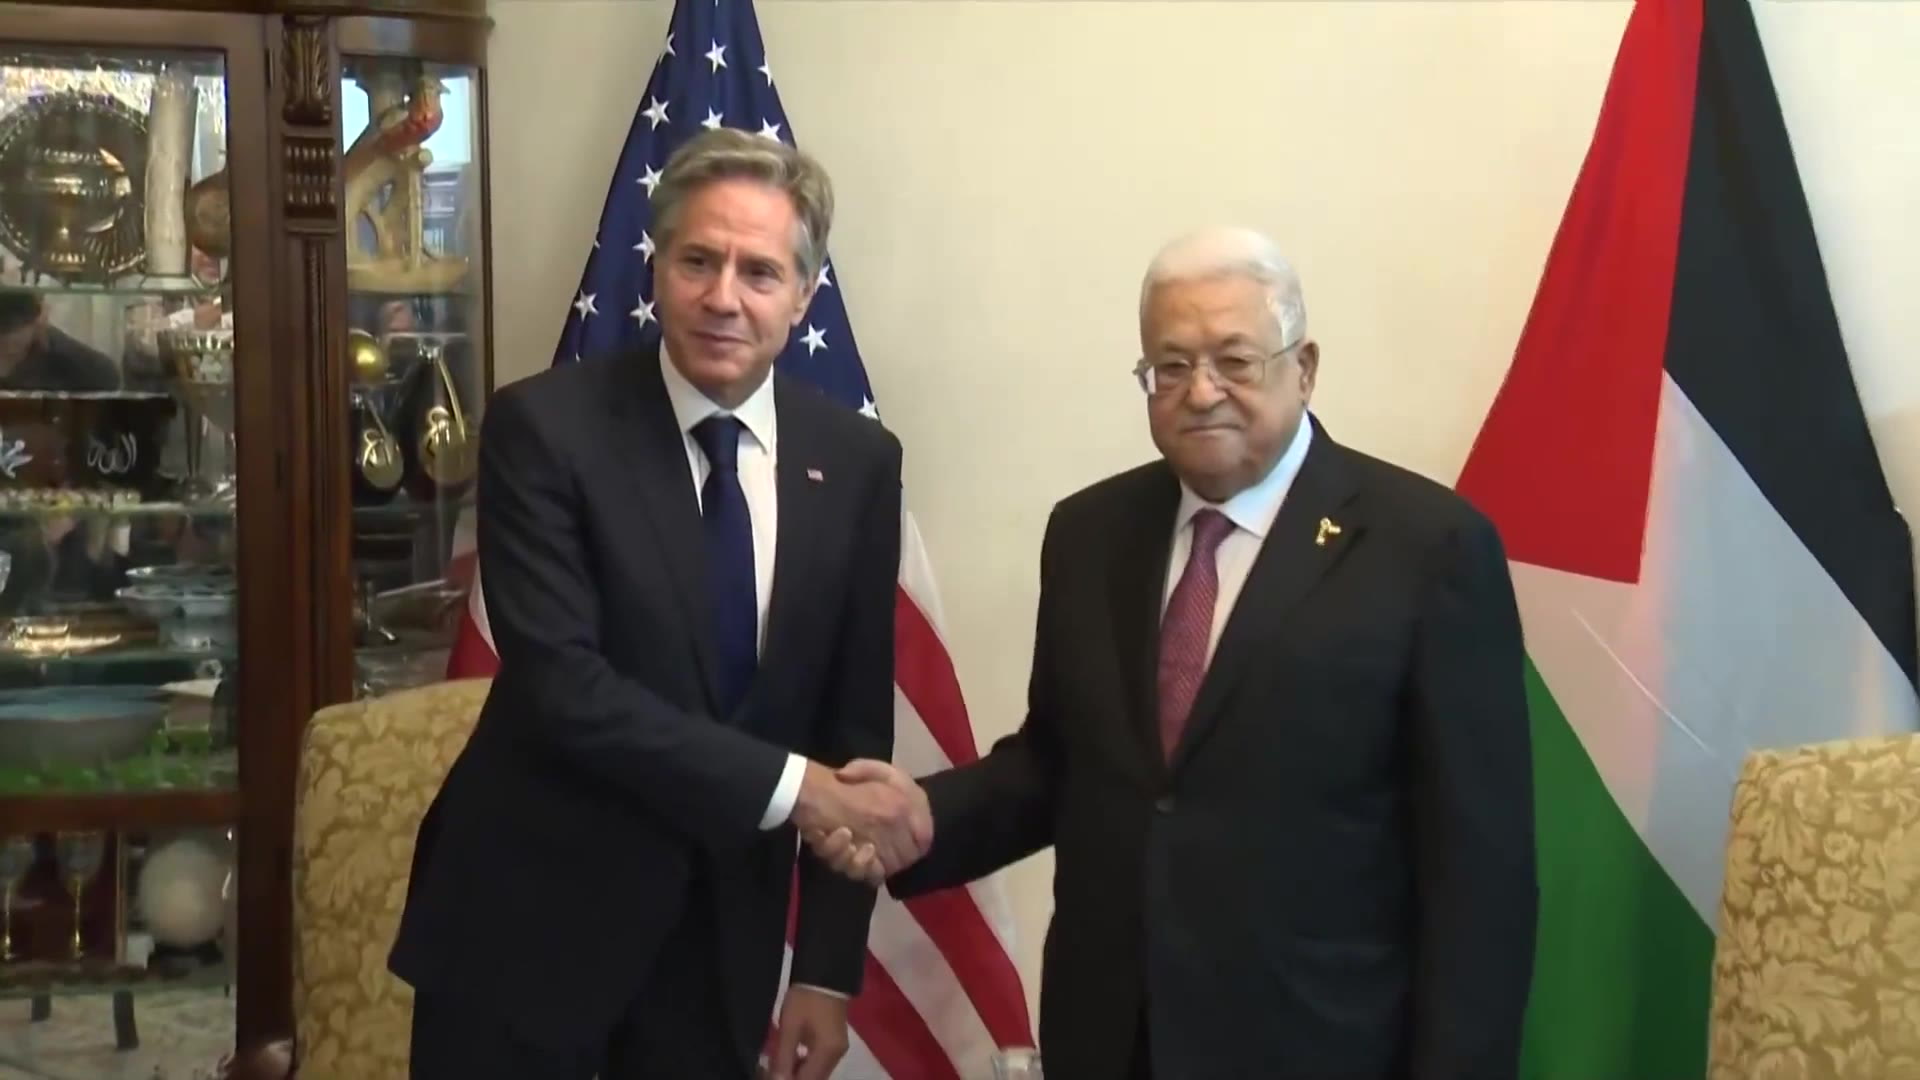 ABŞ dövlət katibinin Mahmud Abbasla görüşü